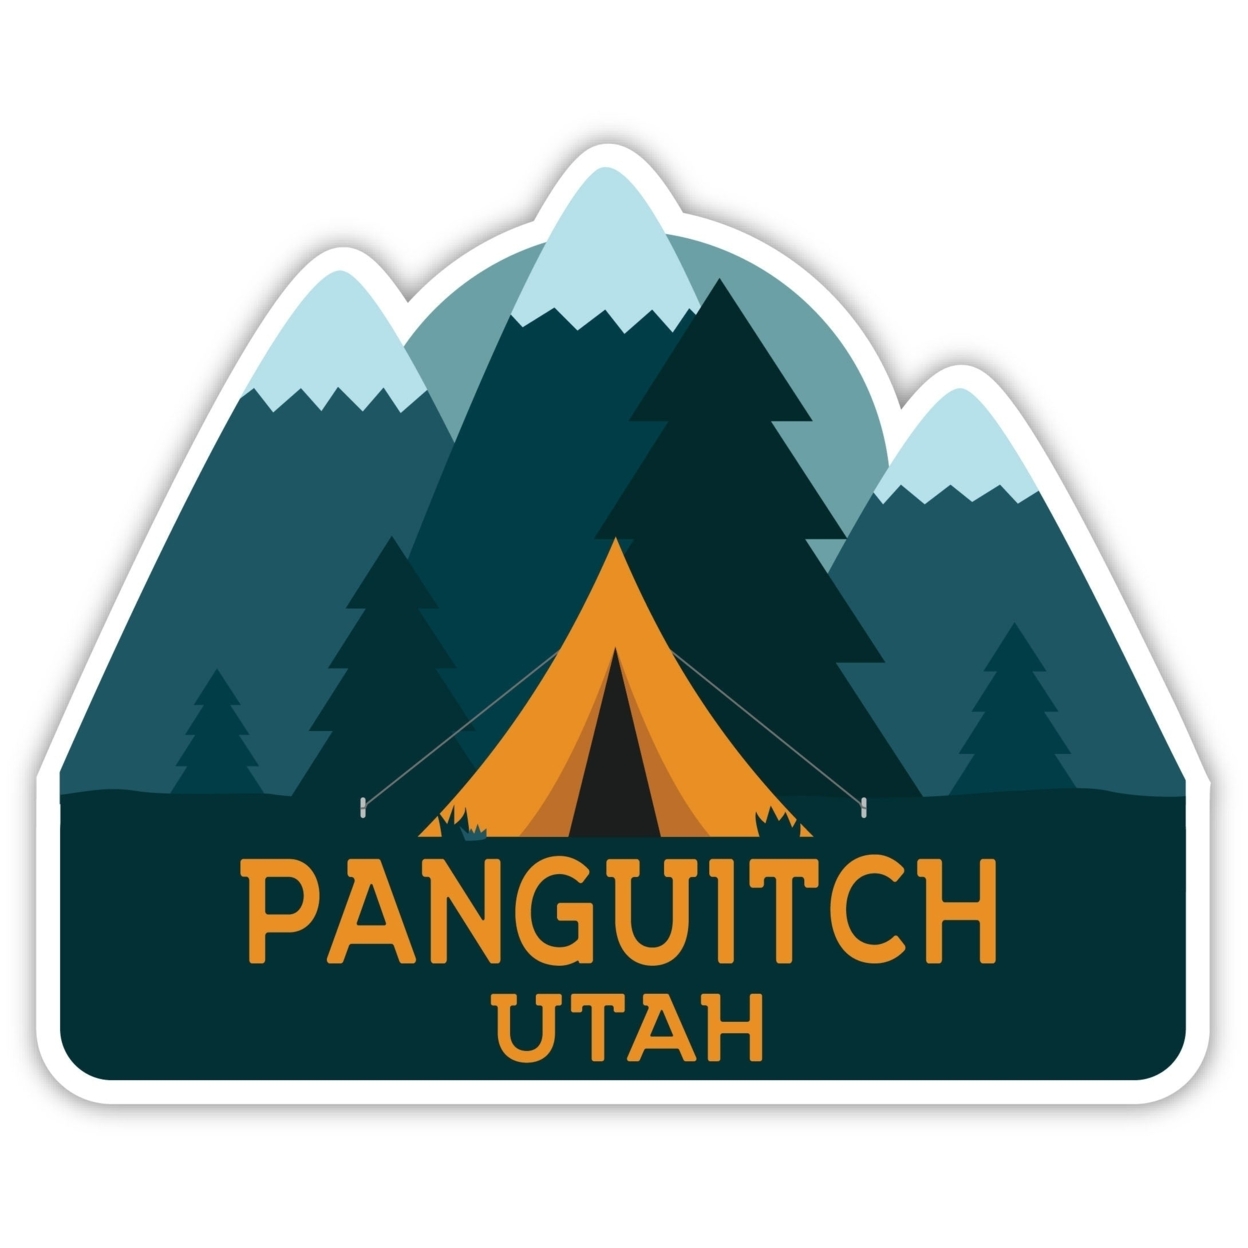 Panguitch Utah Souvenir Decorative Stickers (Choose Theme And Size) - Single Unit, 2-Inch, Adventures Awaits